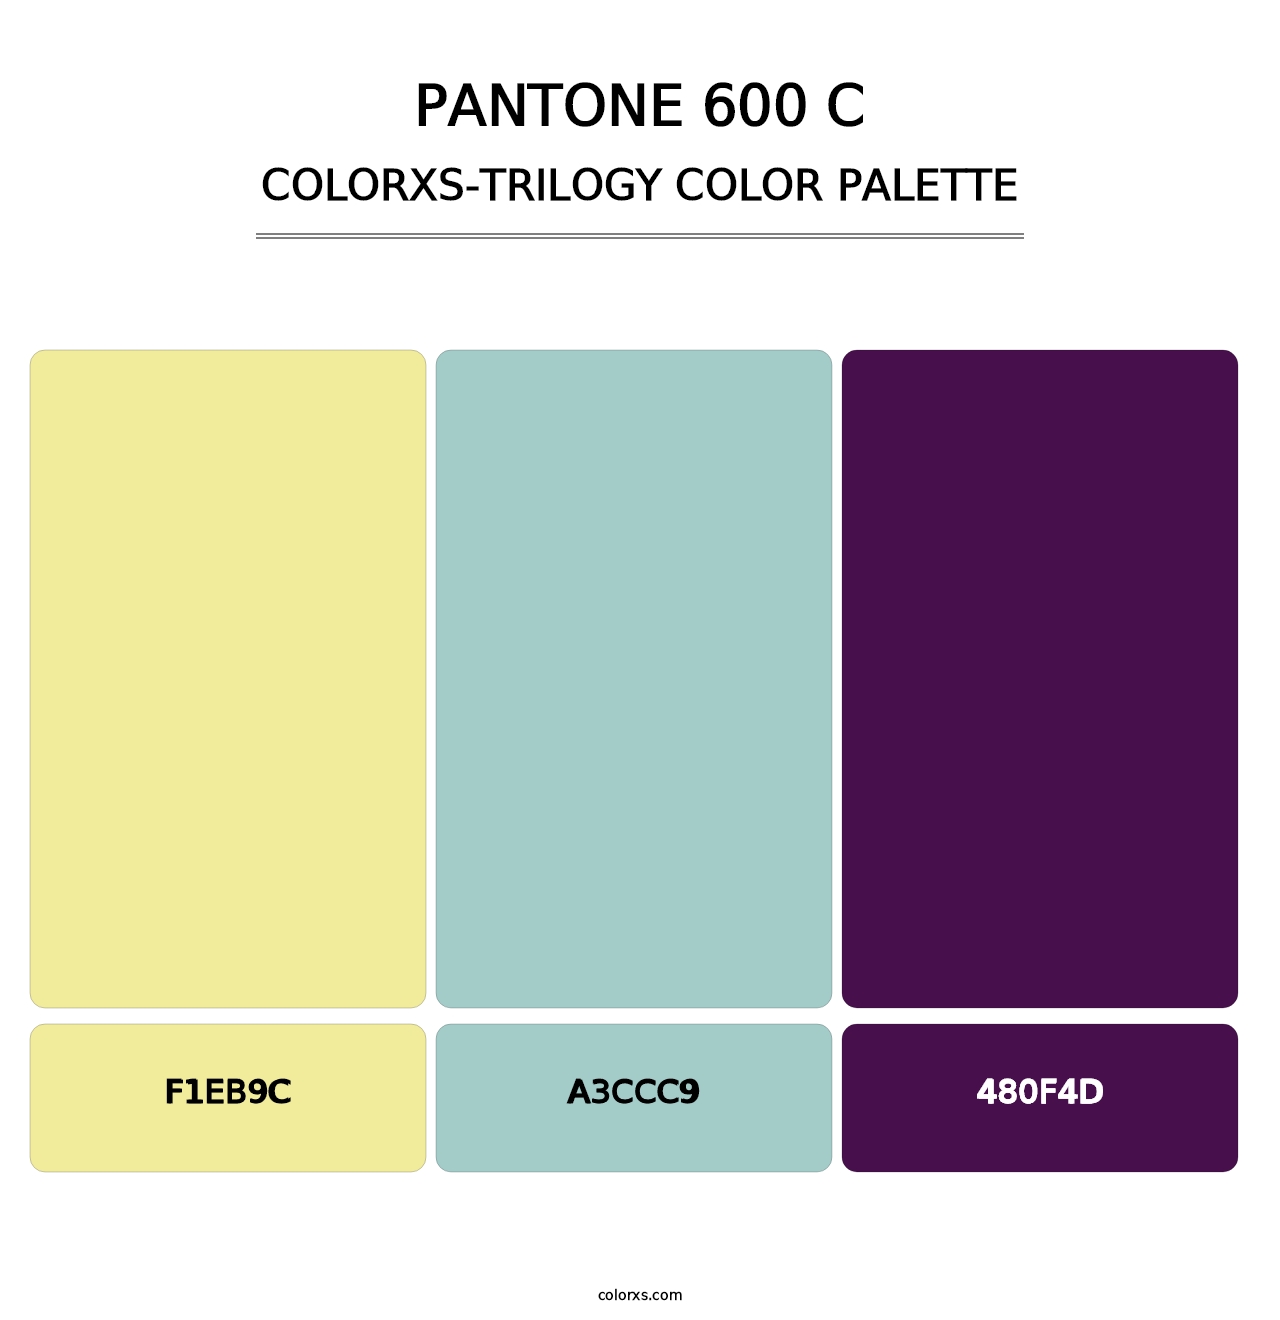 PANTONE 600 C - Colorxs Trilogy Palette